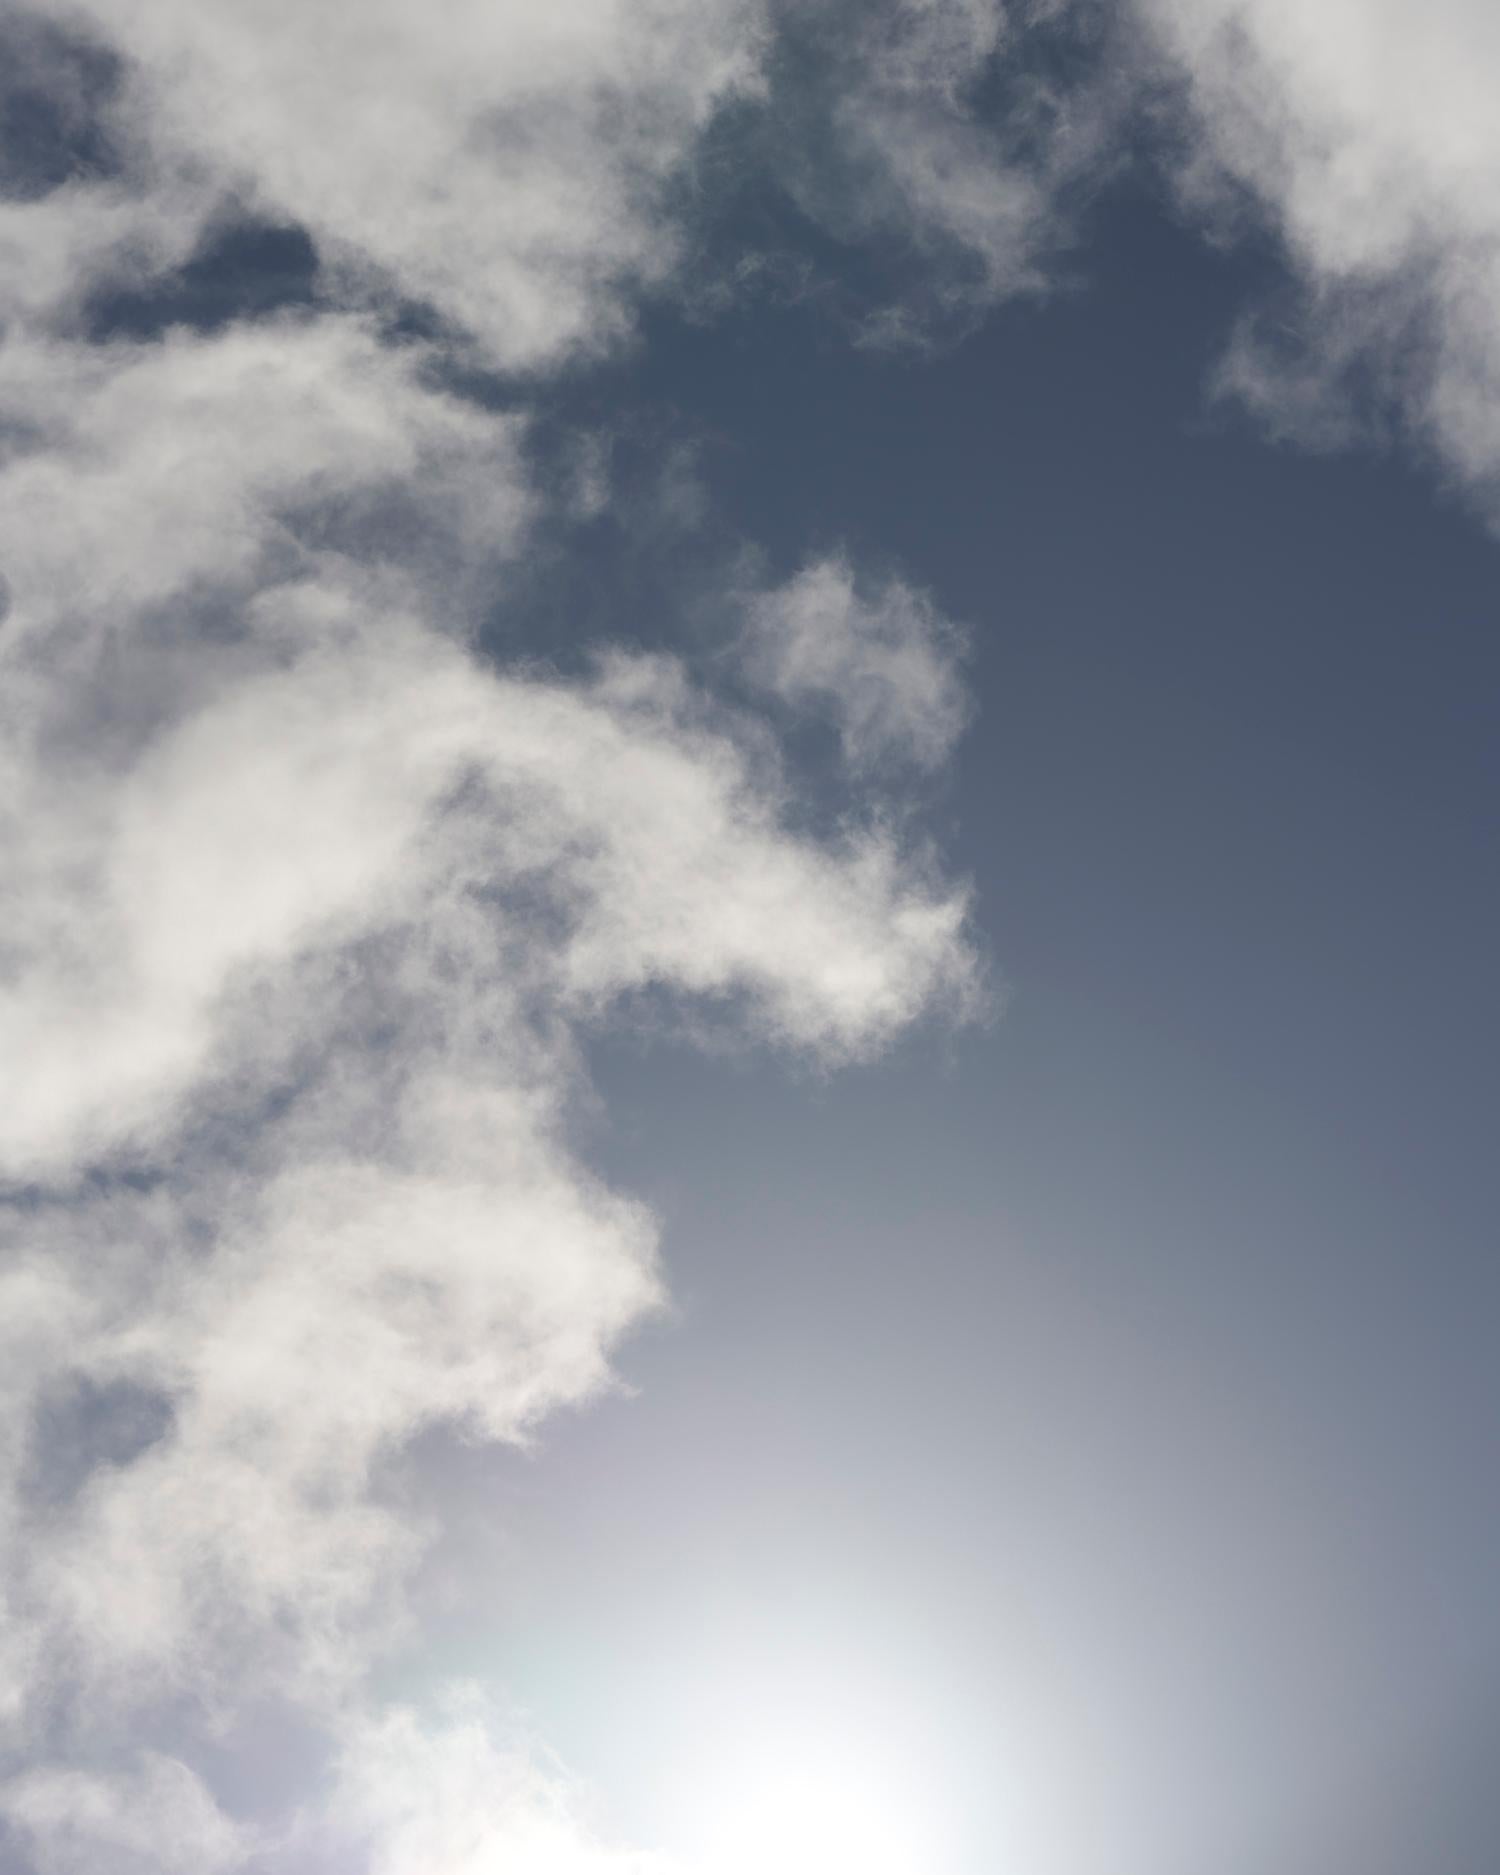 Cloud Study V – großformatige Fotografie dramatischer Wolkenlandschaften im Sommerhimmel